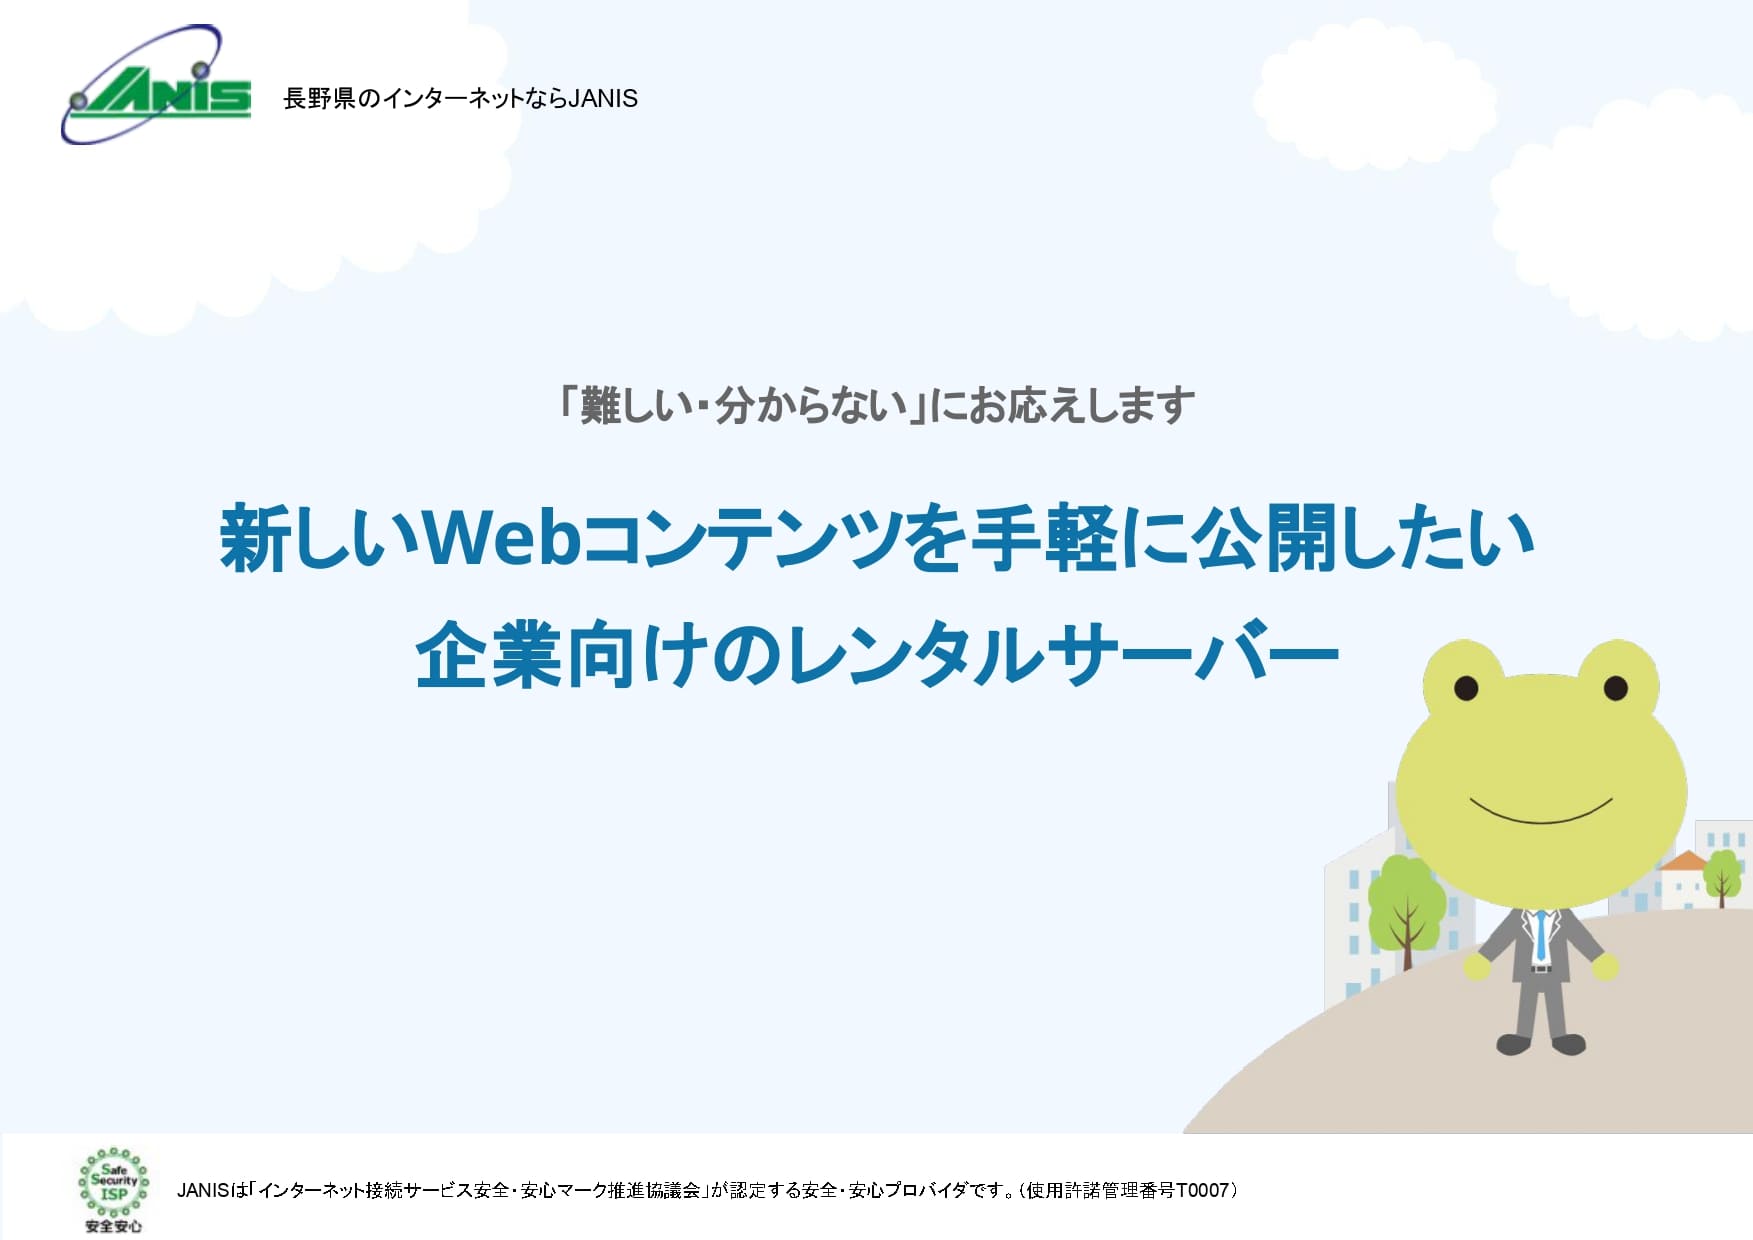 新しいWebコンテンツを手軽に公開したい企業向けのレンタルサーバ|JANIS長野県協同電算(JANIS)